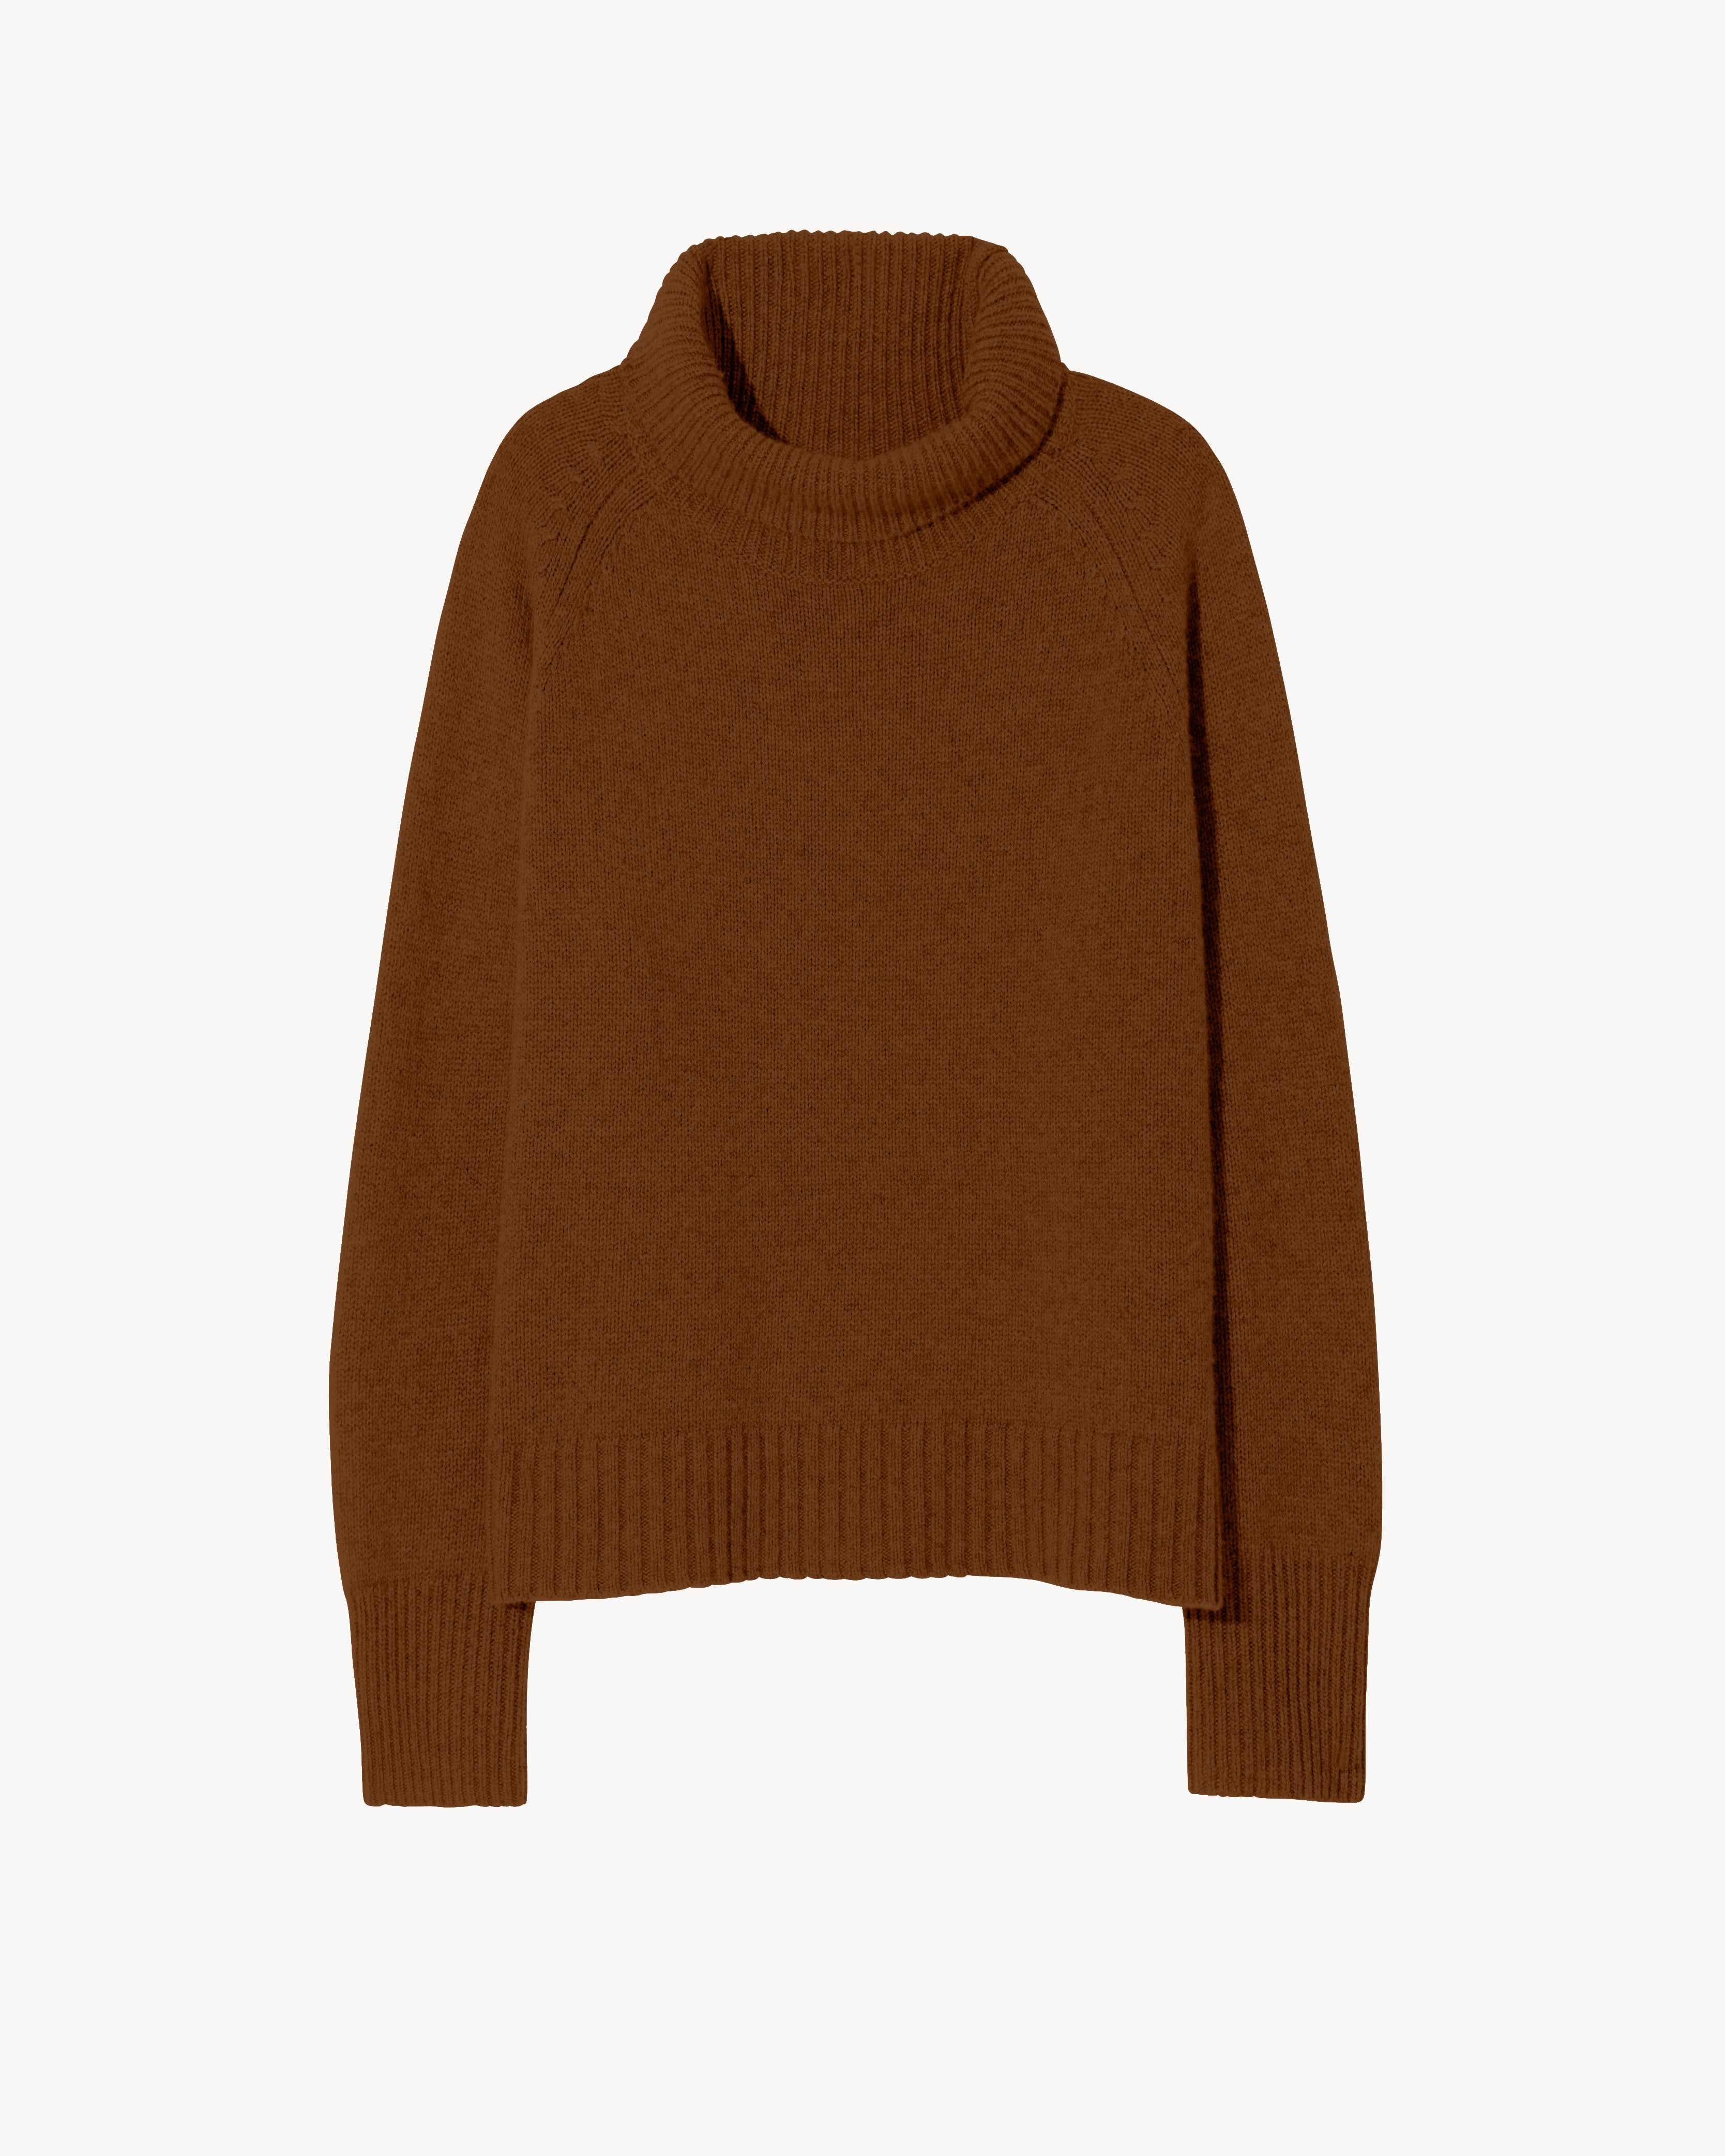 Nili Lotan Lanie Sweater In Charcoal